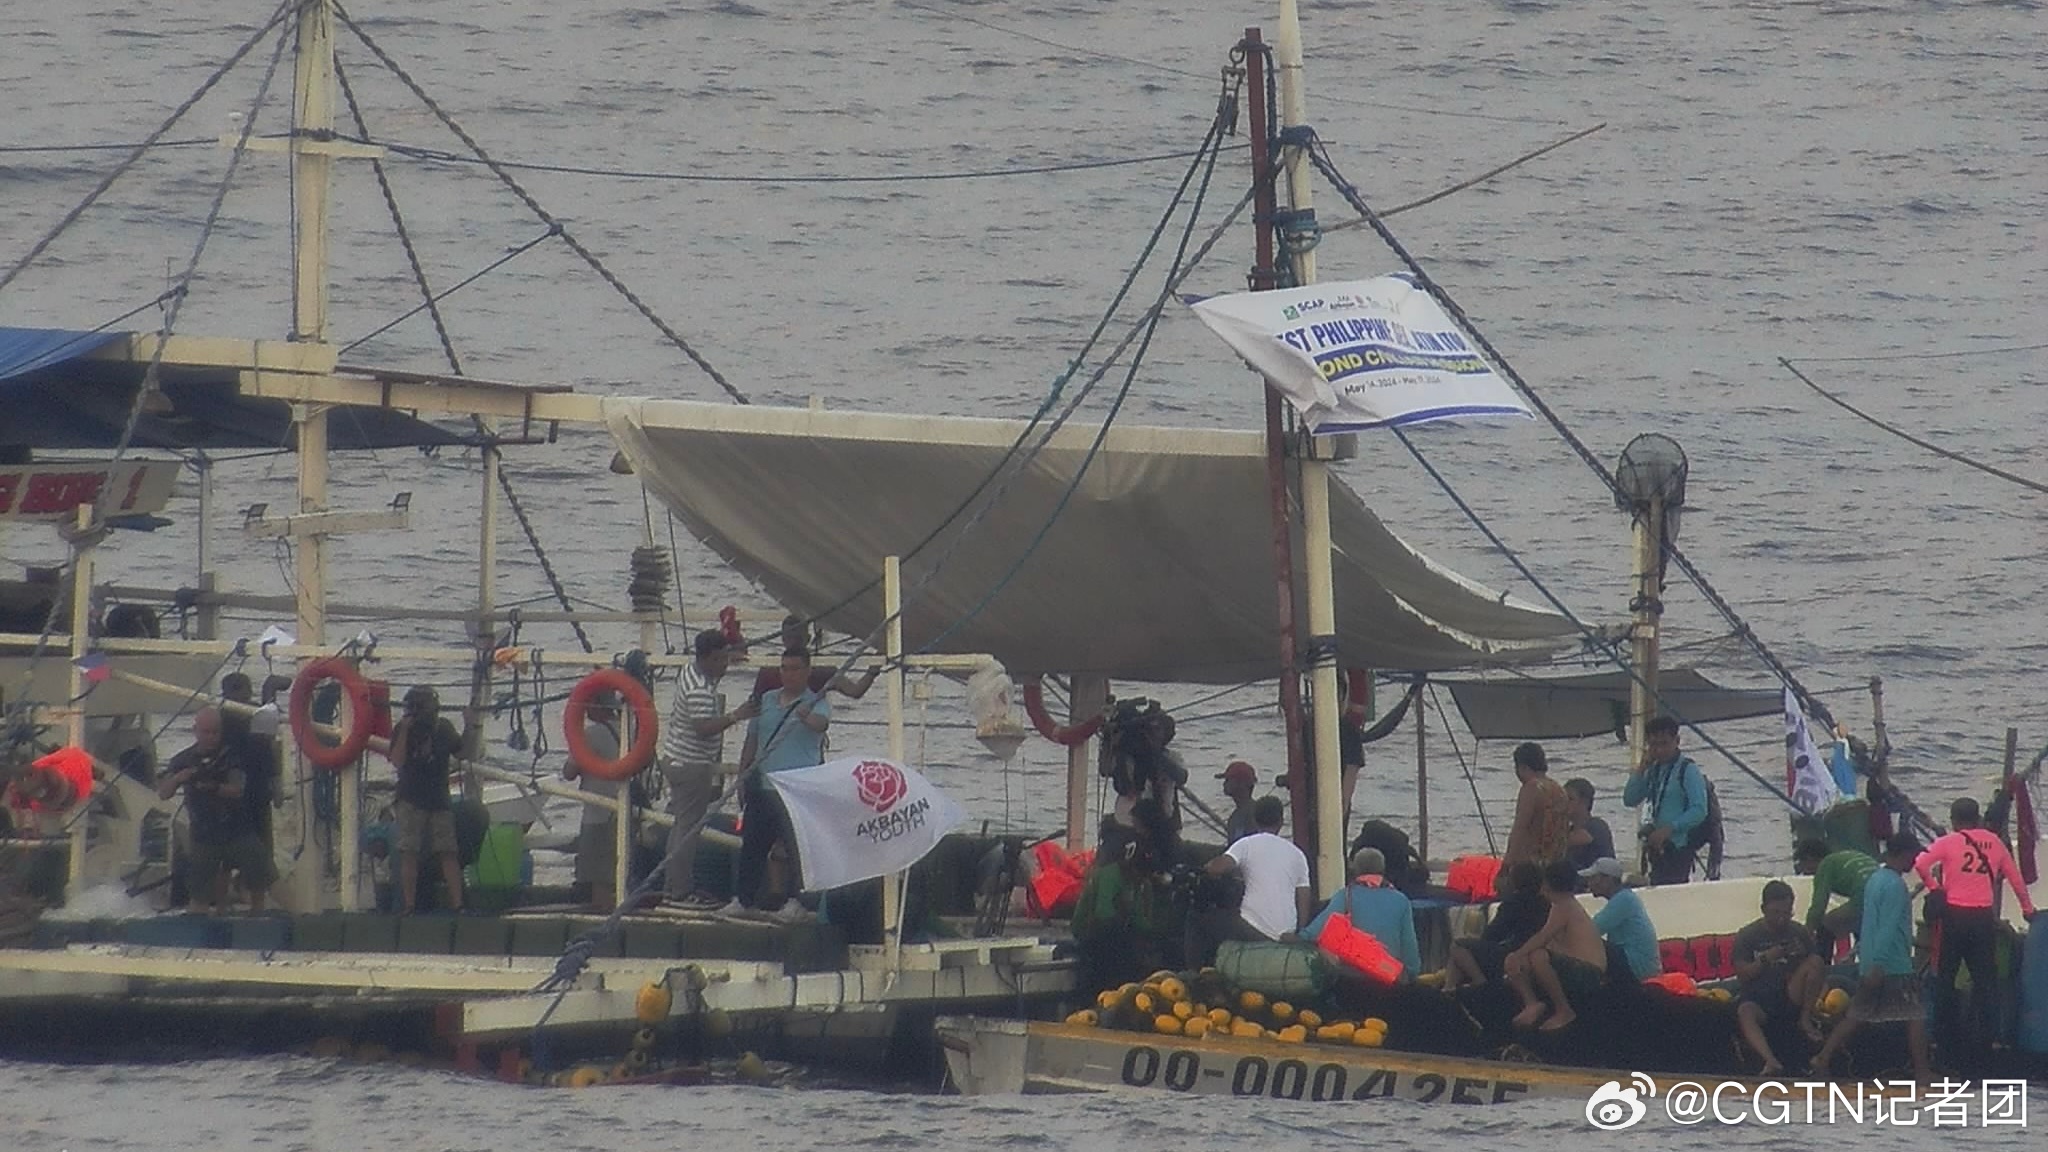 菲律宾多艘船只在我黄岩岛邻近海域非法聚集 中国海警依法现场管制